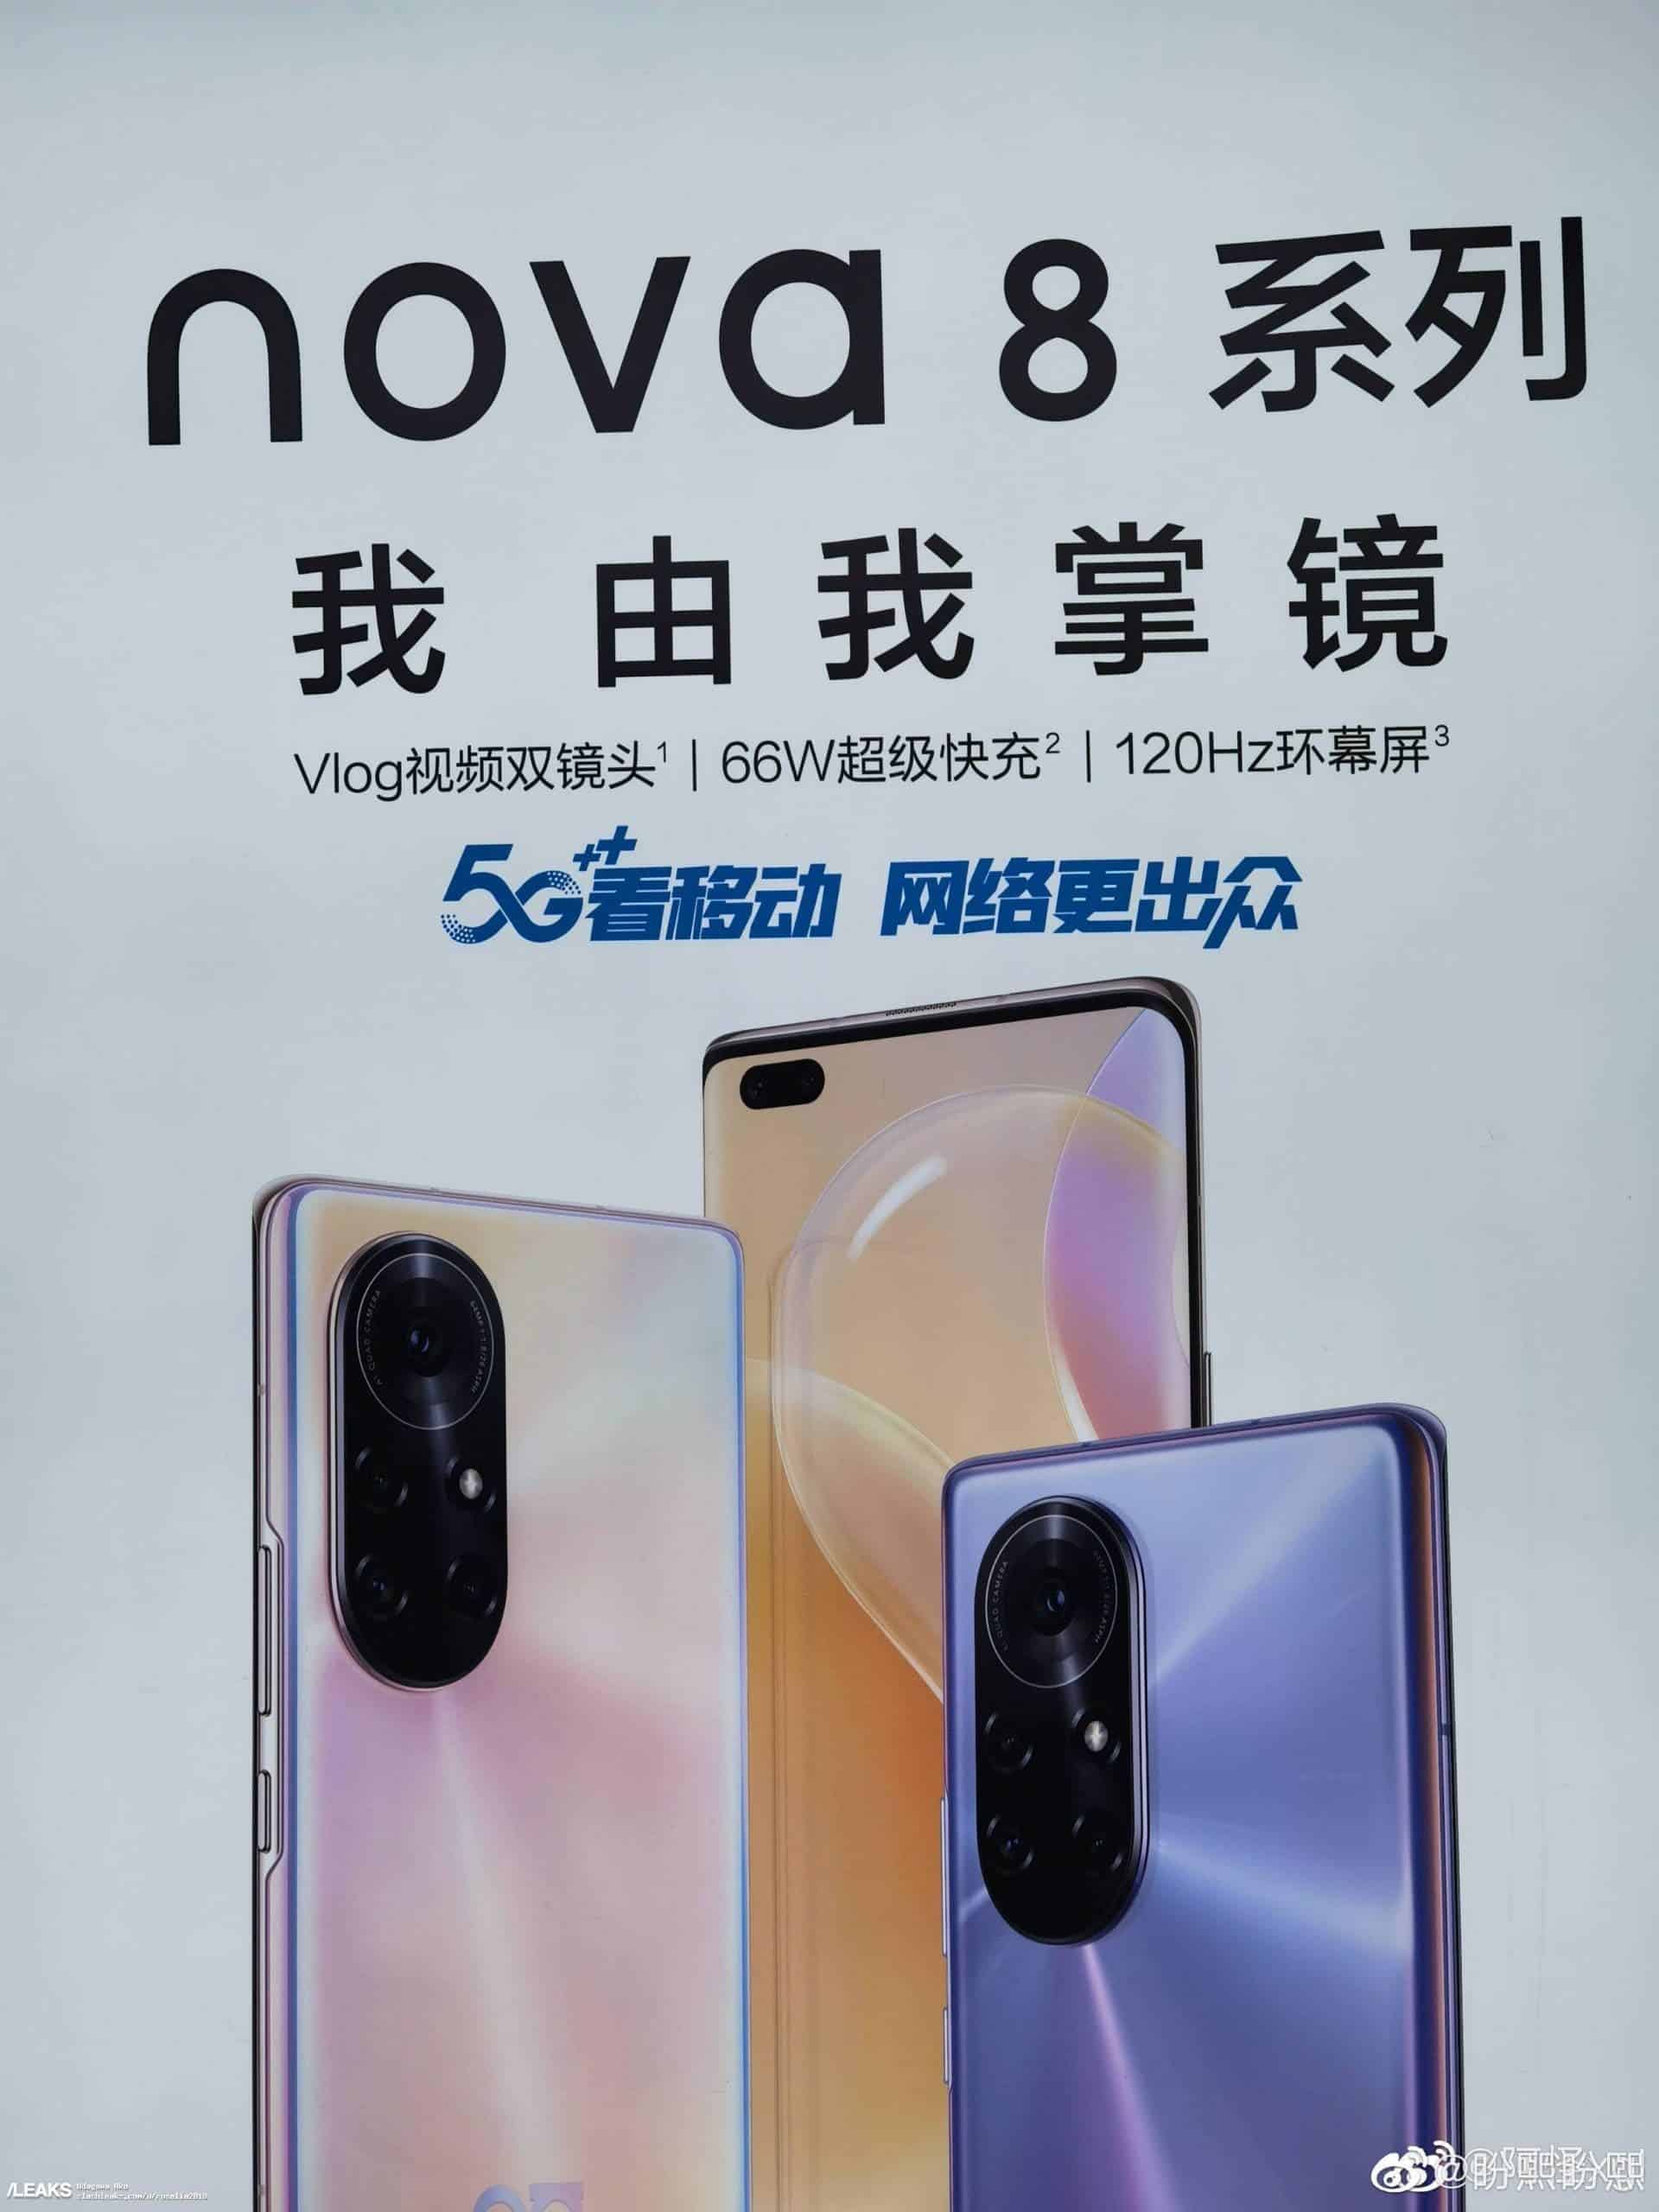 A high-quality image of the Huawei Nova 8 shows a new design